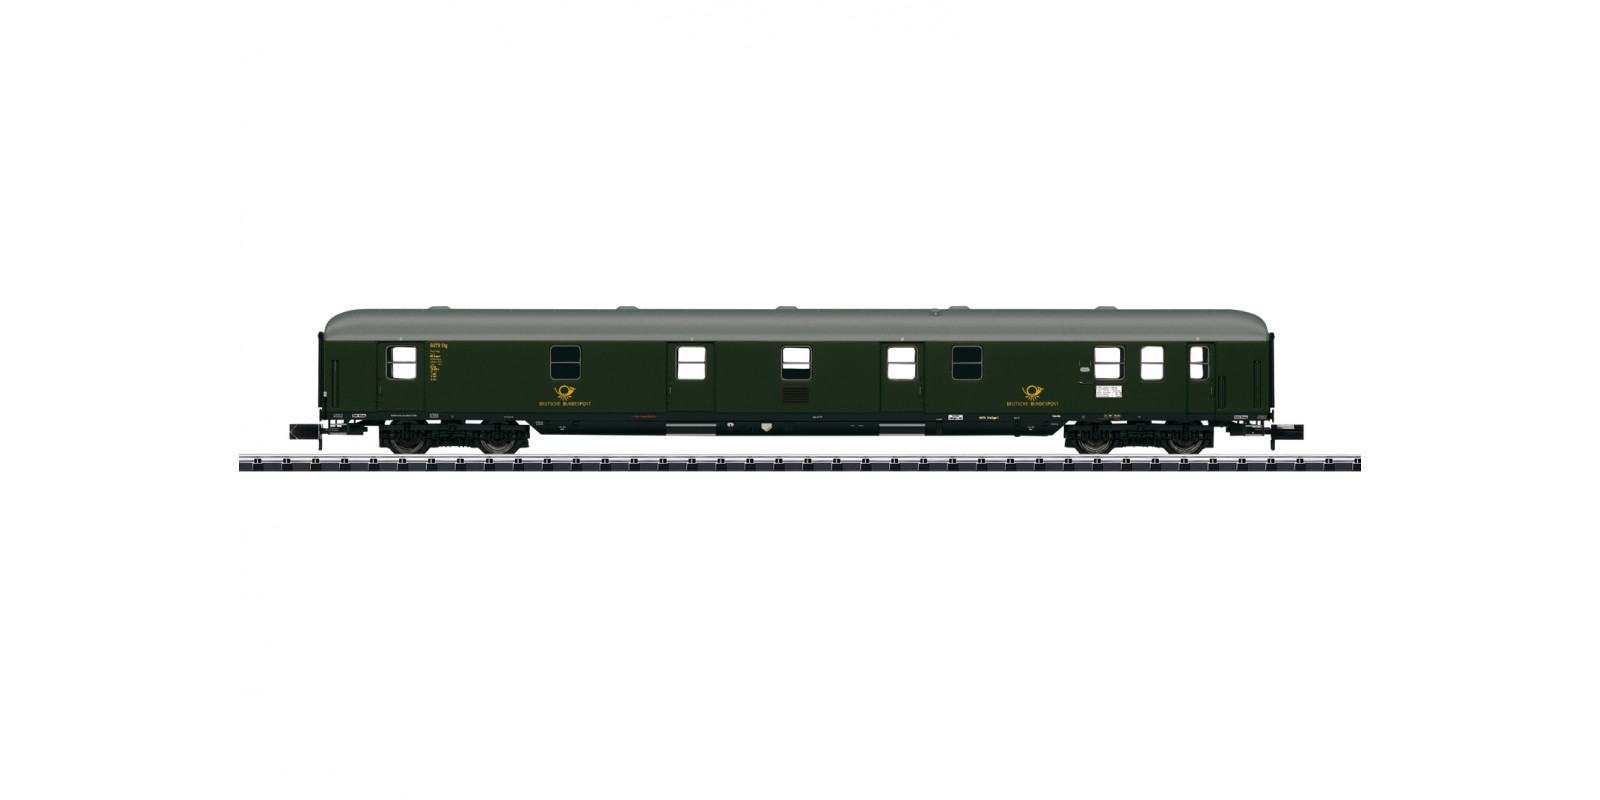 T18400 Railroad Mail Car